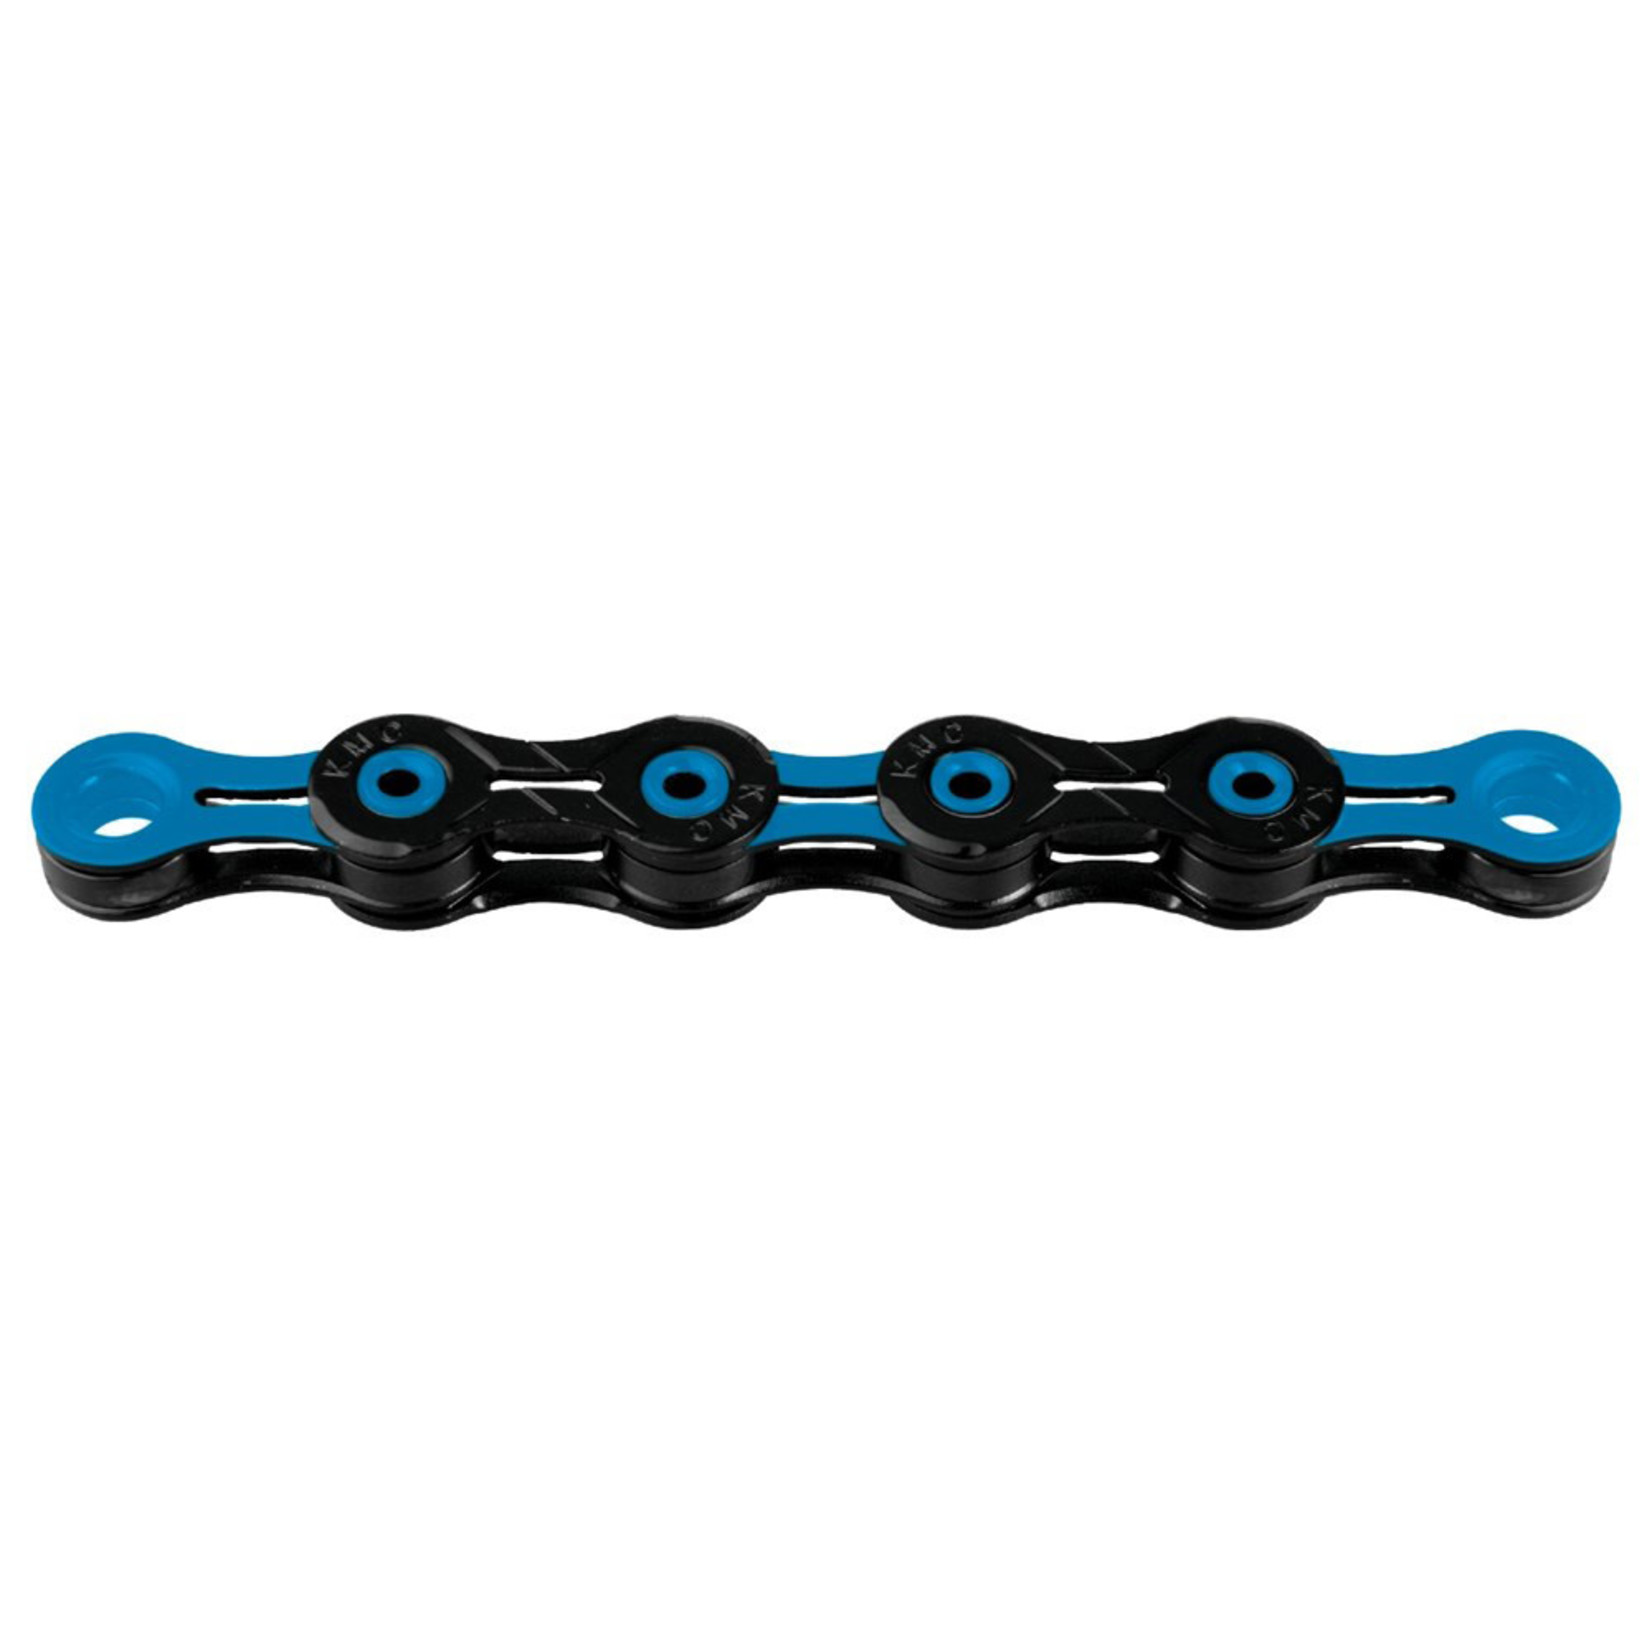 KMC KMC Bike Chain - DLC Series - Triple X Durability - 116L - Blue